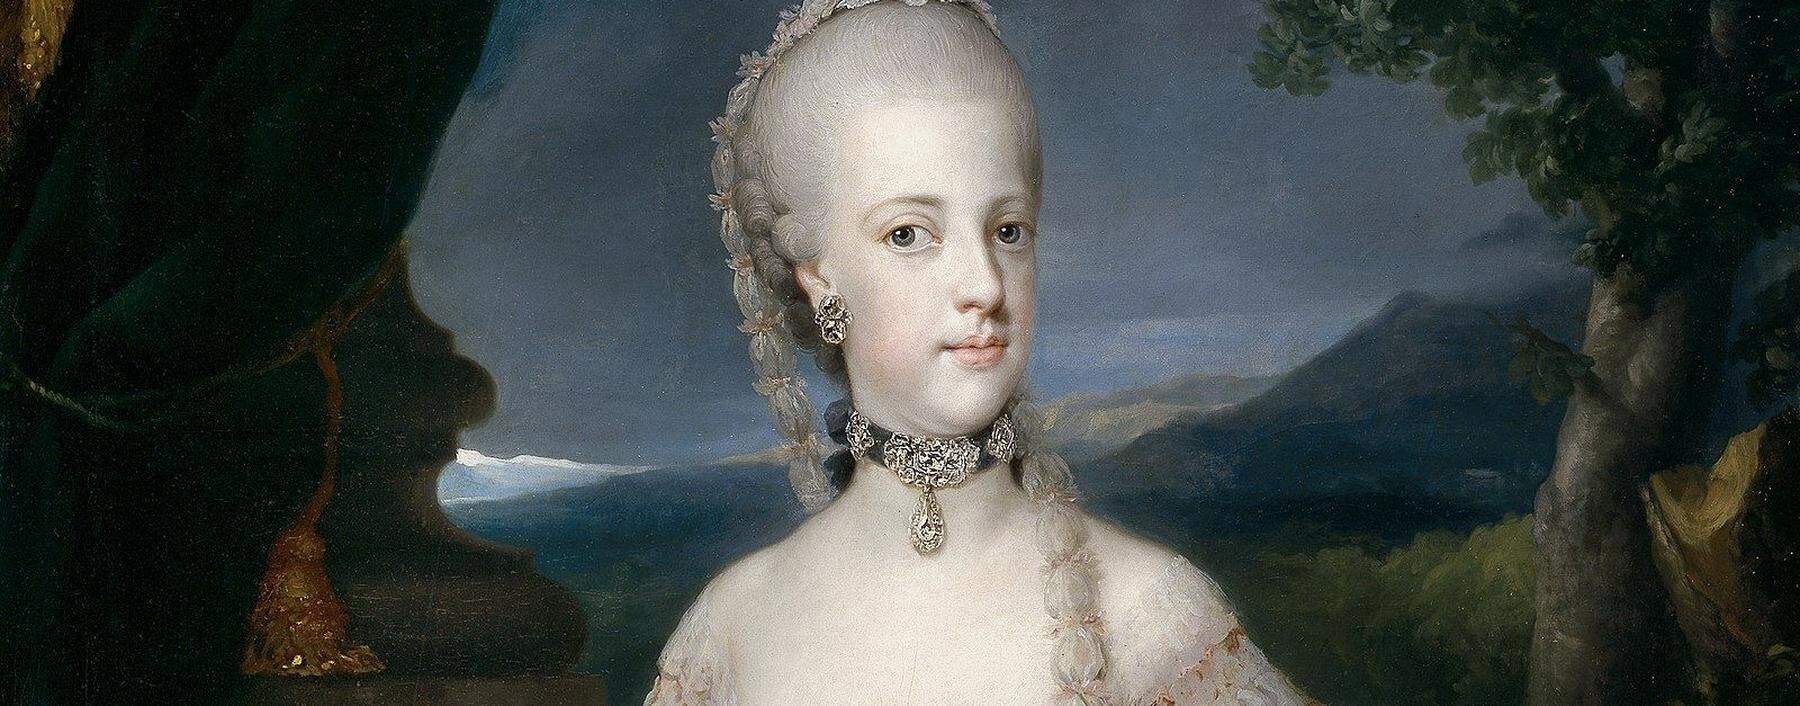 Sie wurde von französischen Truppen aus ihrem Königreich vertrieben, kehrte zurück, wurde noch einmal vertrieben, starb im Exil in Wien: Maria Carolina.